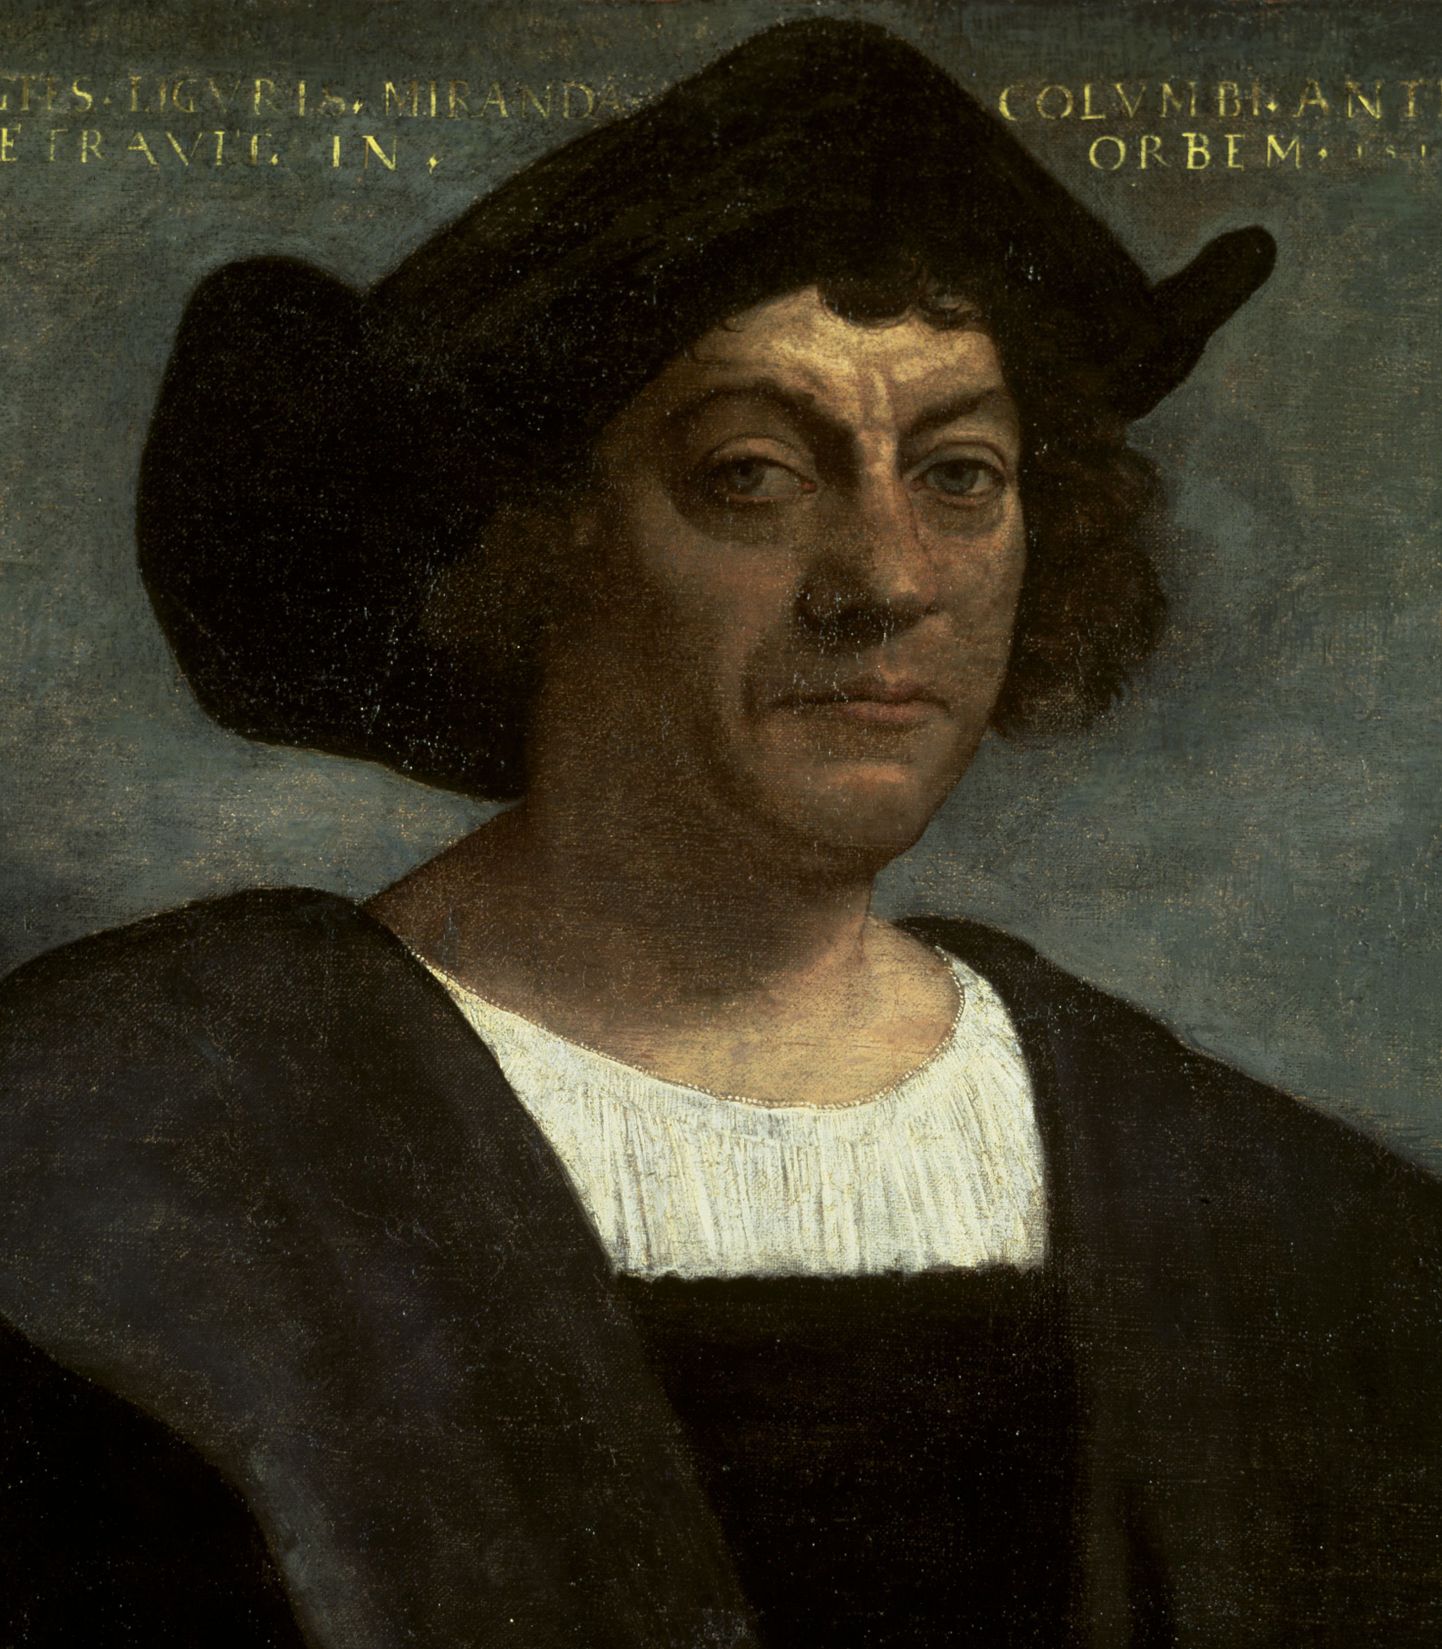 Cristoph Columbus.